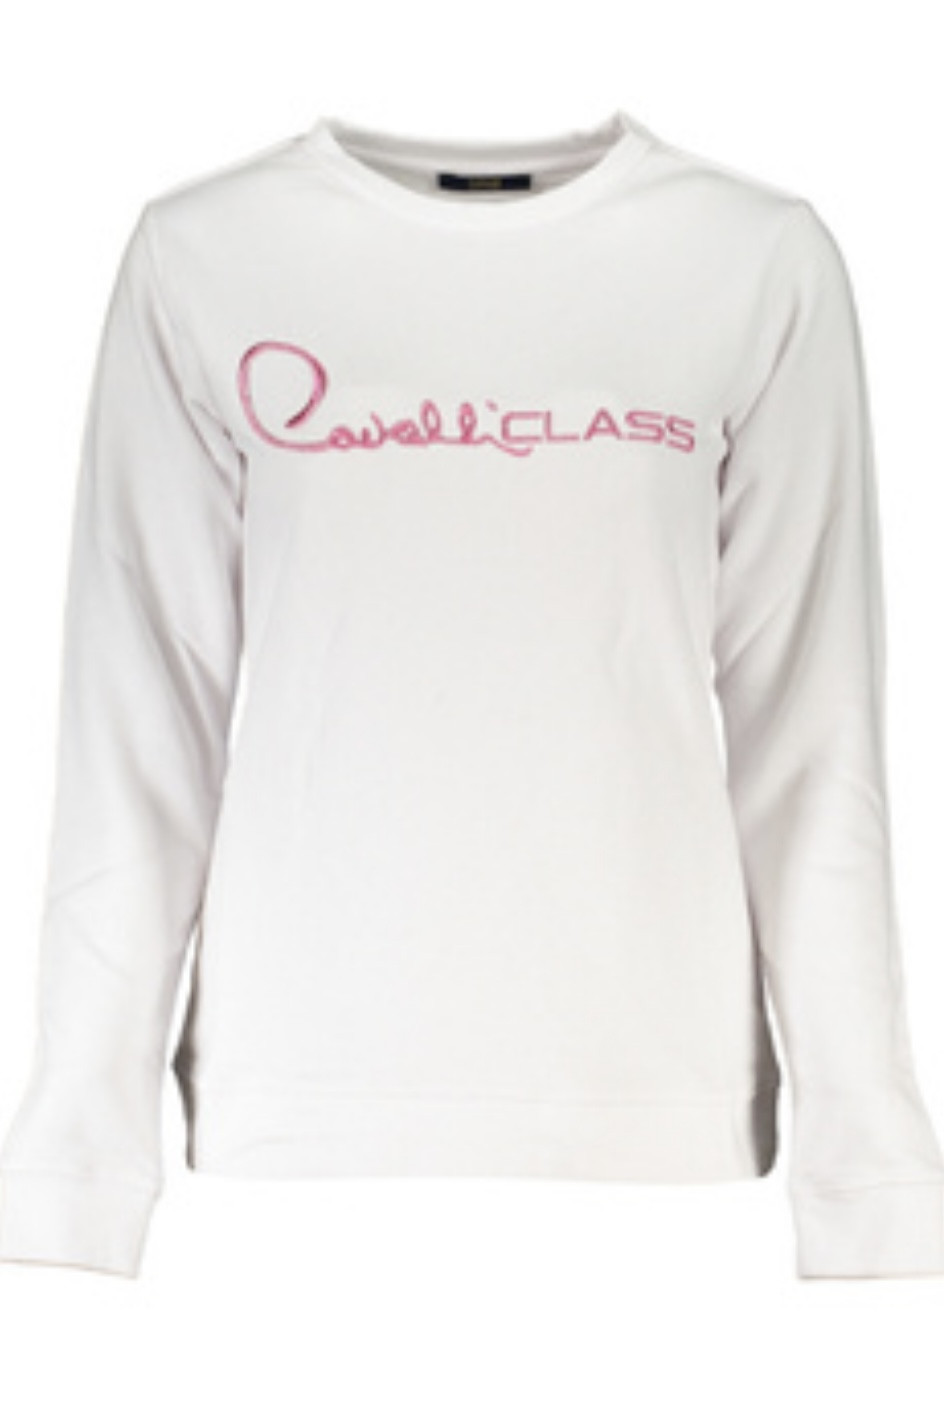 Bluza damska Cavalli Class biała